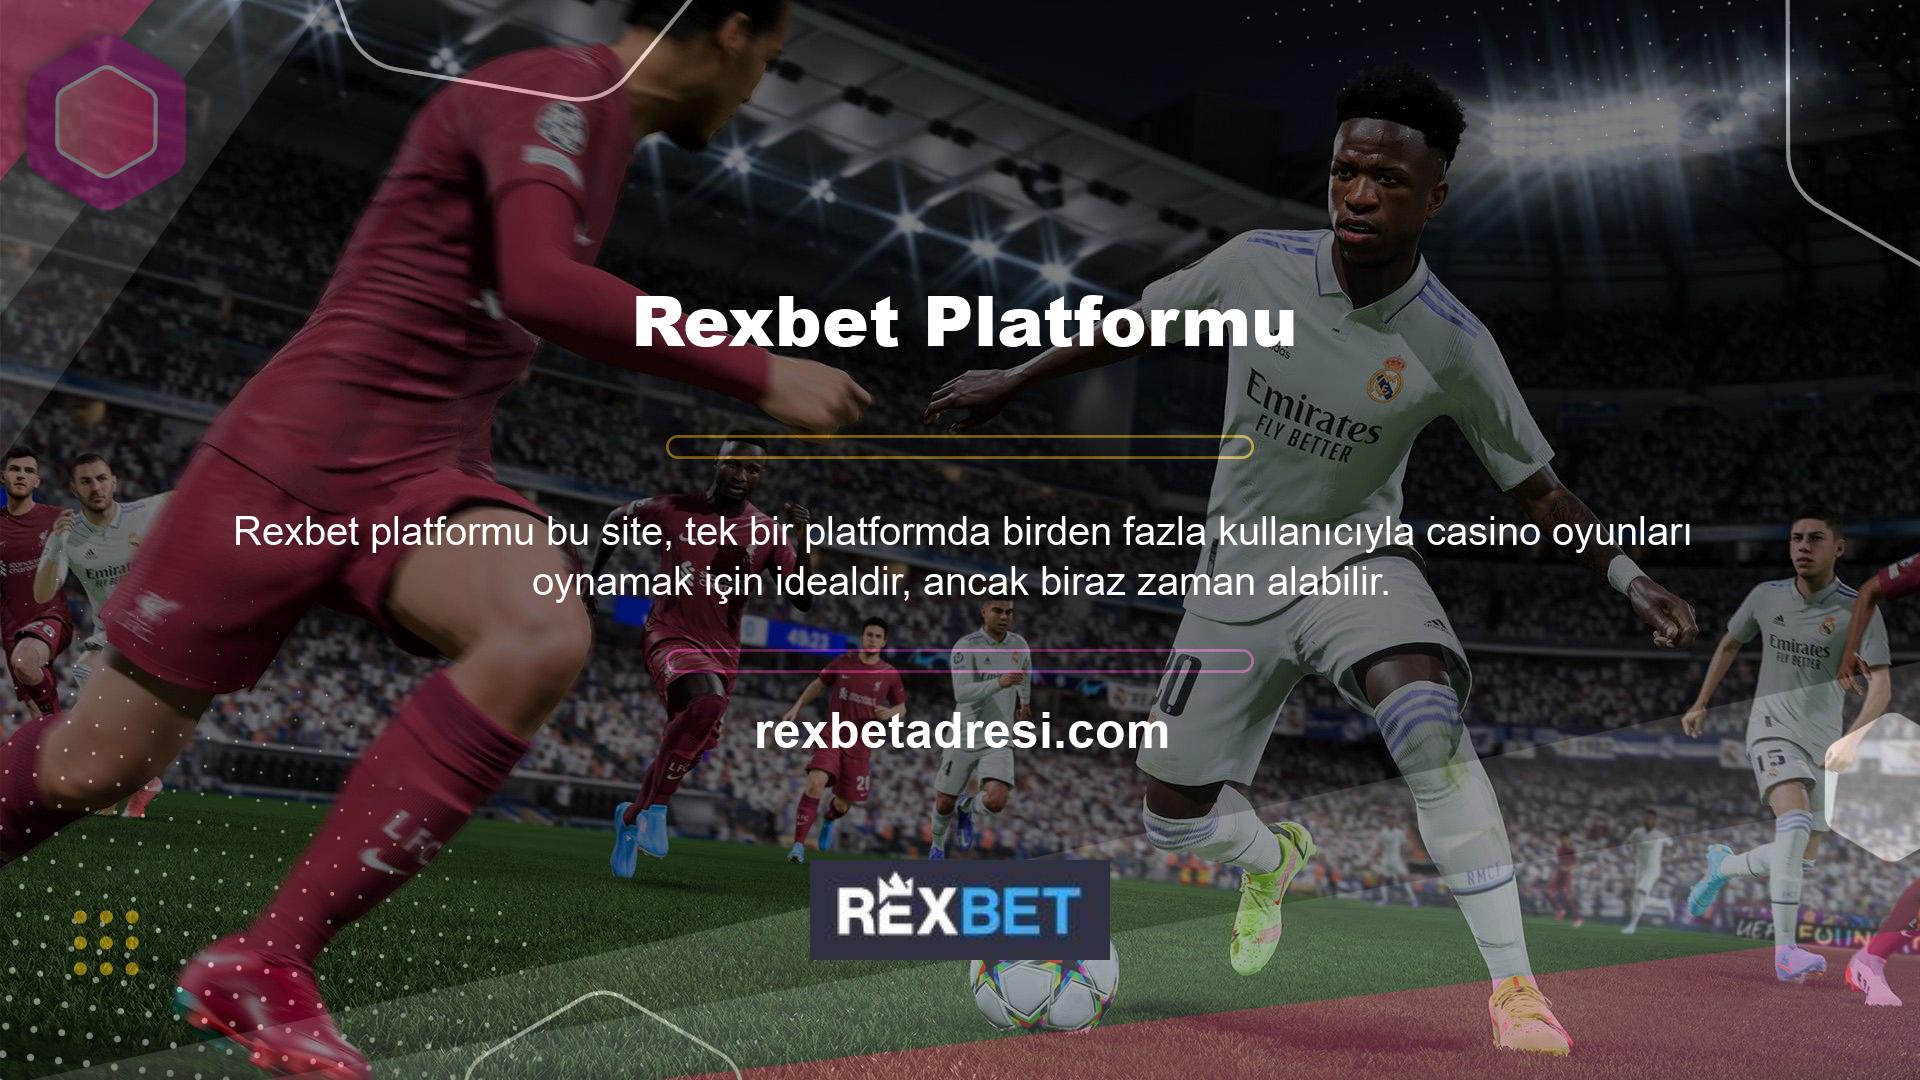 Ayrıca Rexbet web sitesinin kullanıcılarına çok çeşitli turnuva seçenekleri sunduğunu da belirtmek gerekir